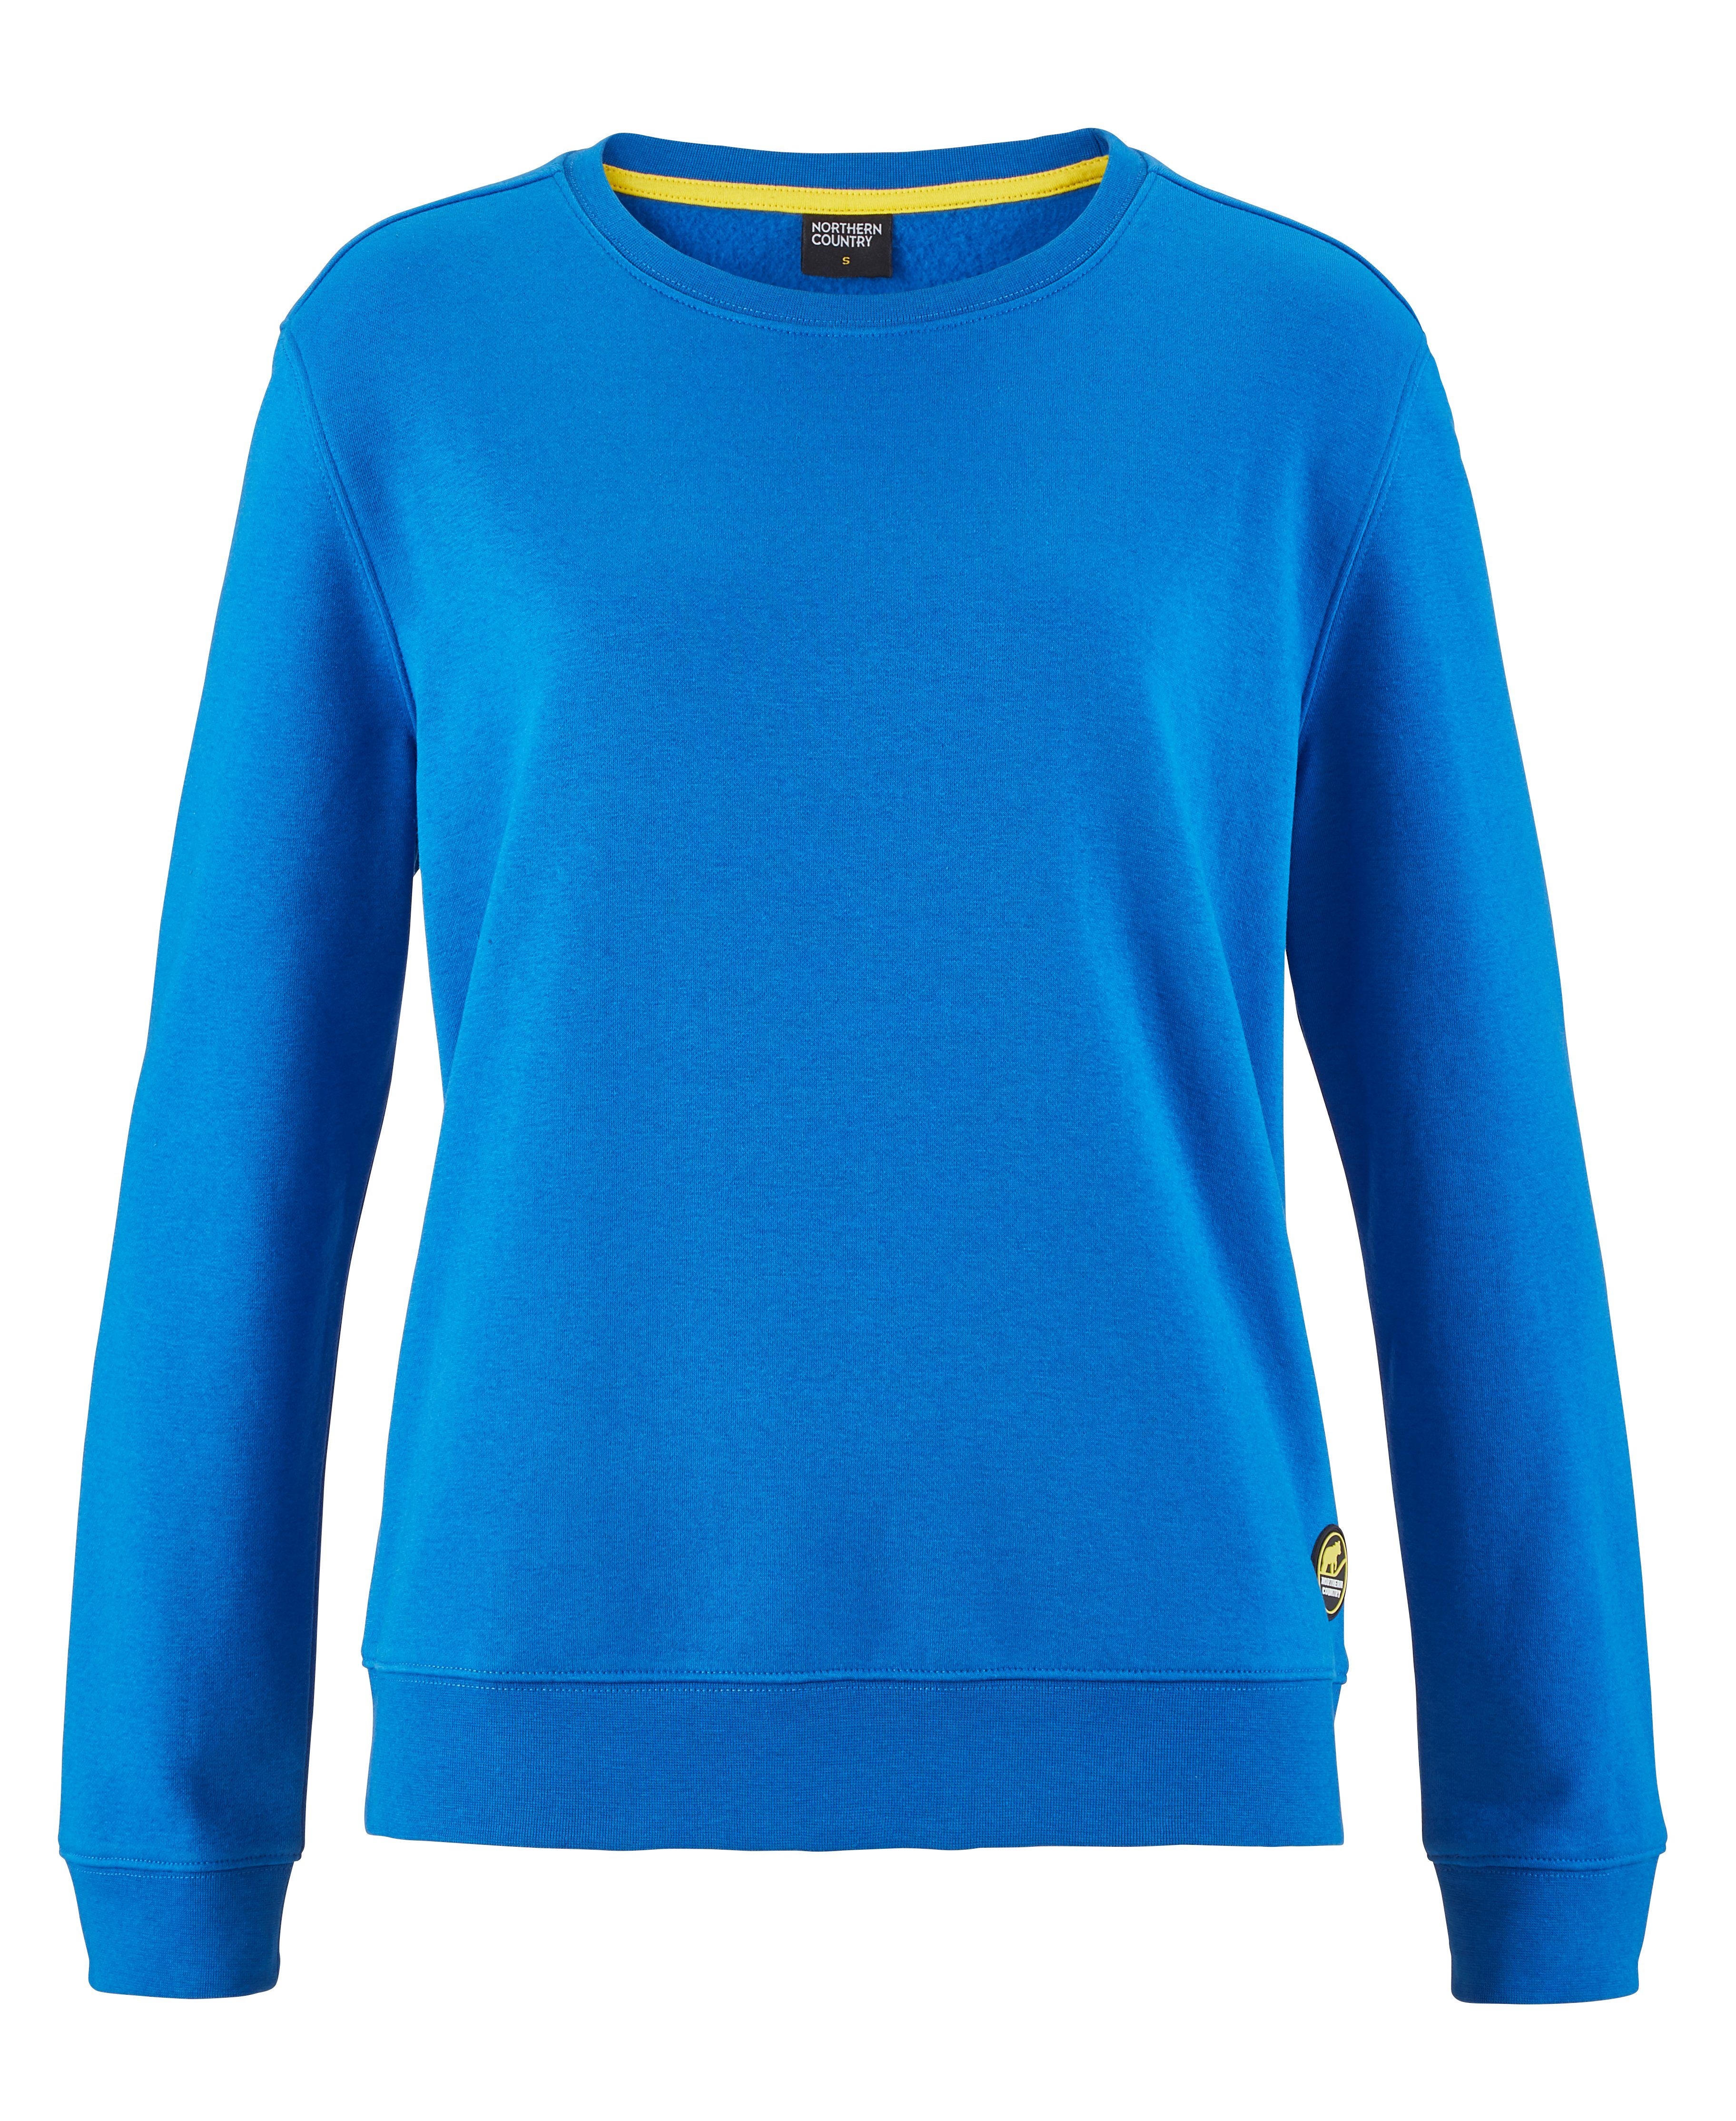 Northern Country und Lapis trägt Damen locker für Baumwollmix, leicht sich Blue Sweatshirt aus soften